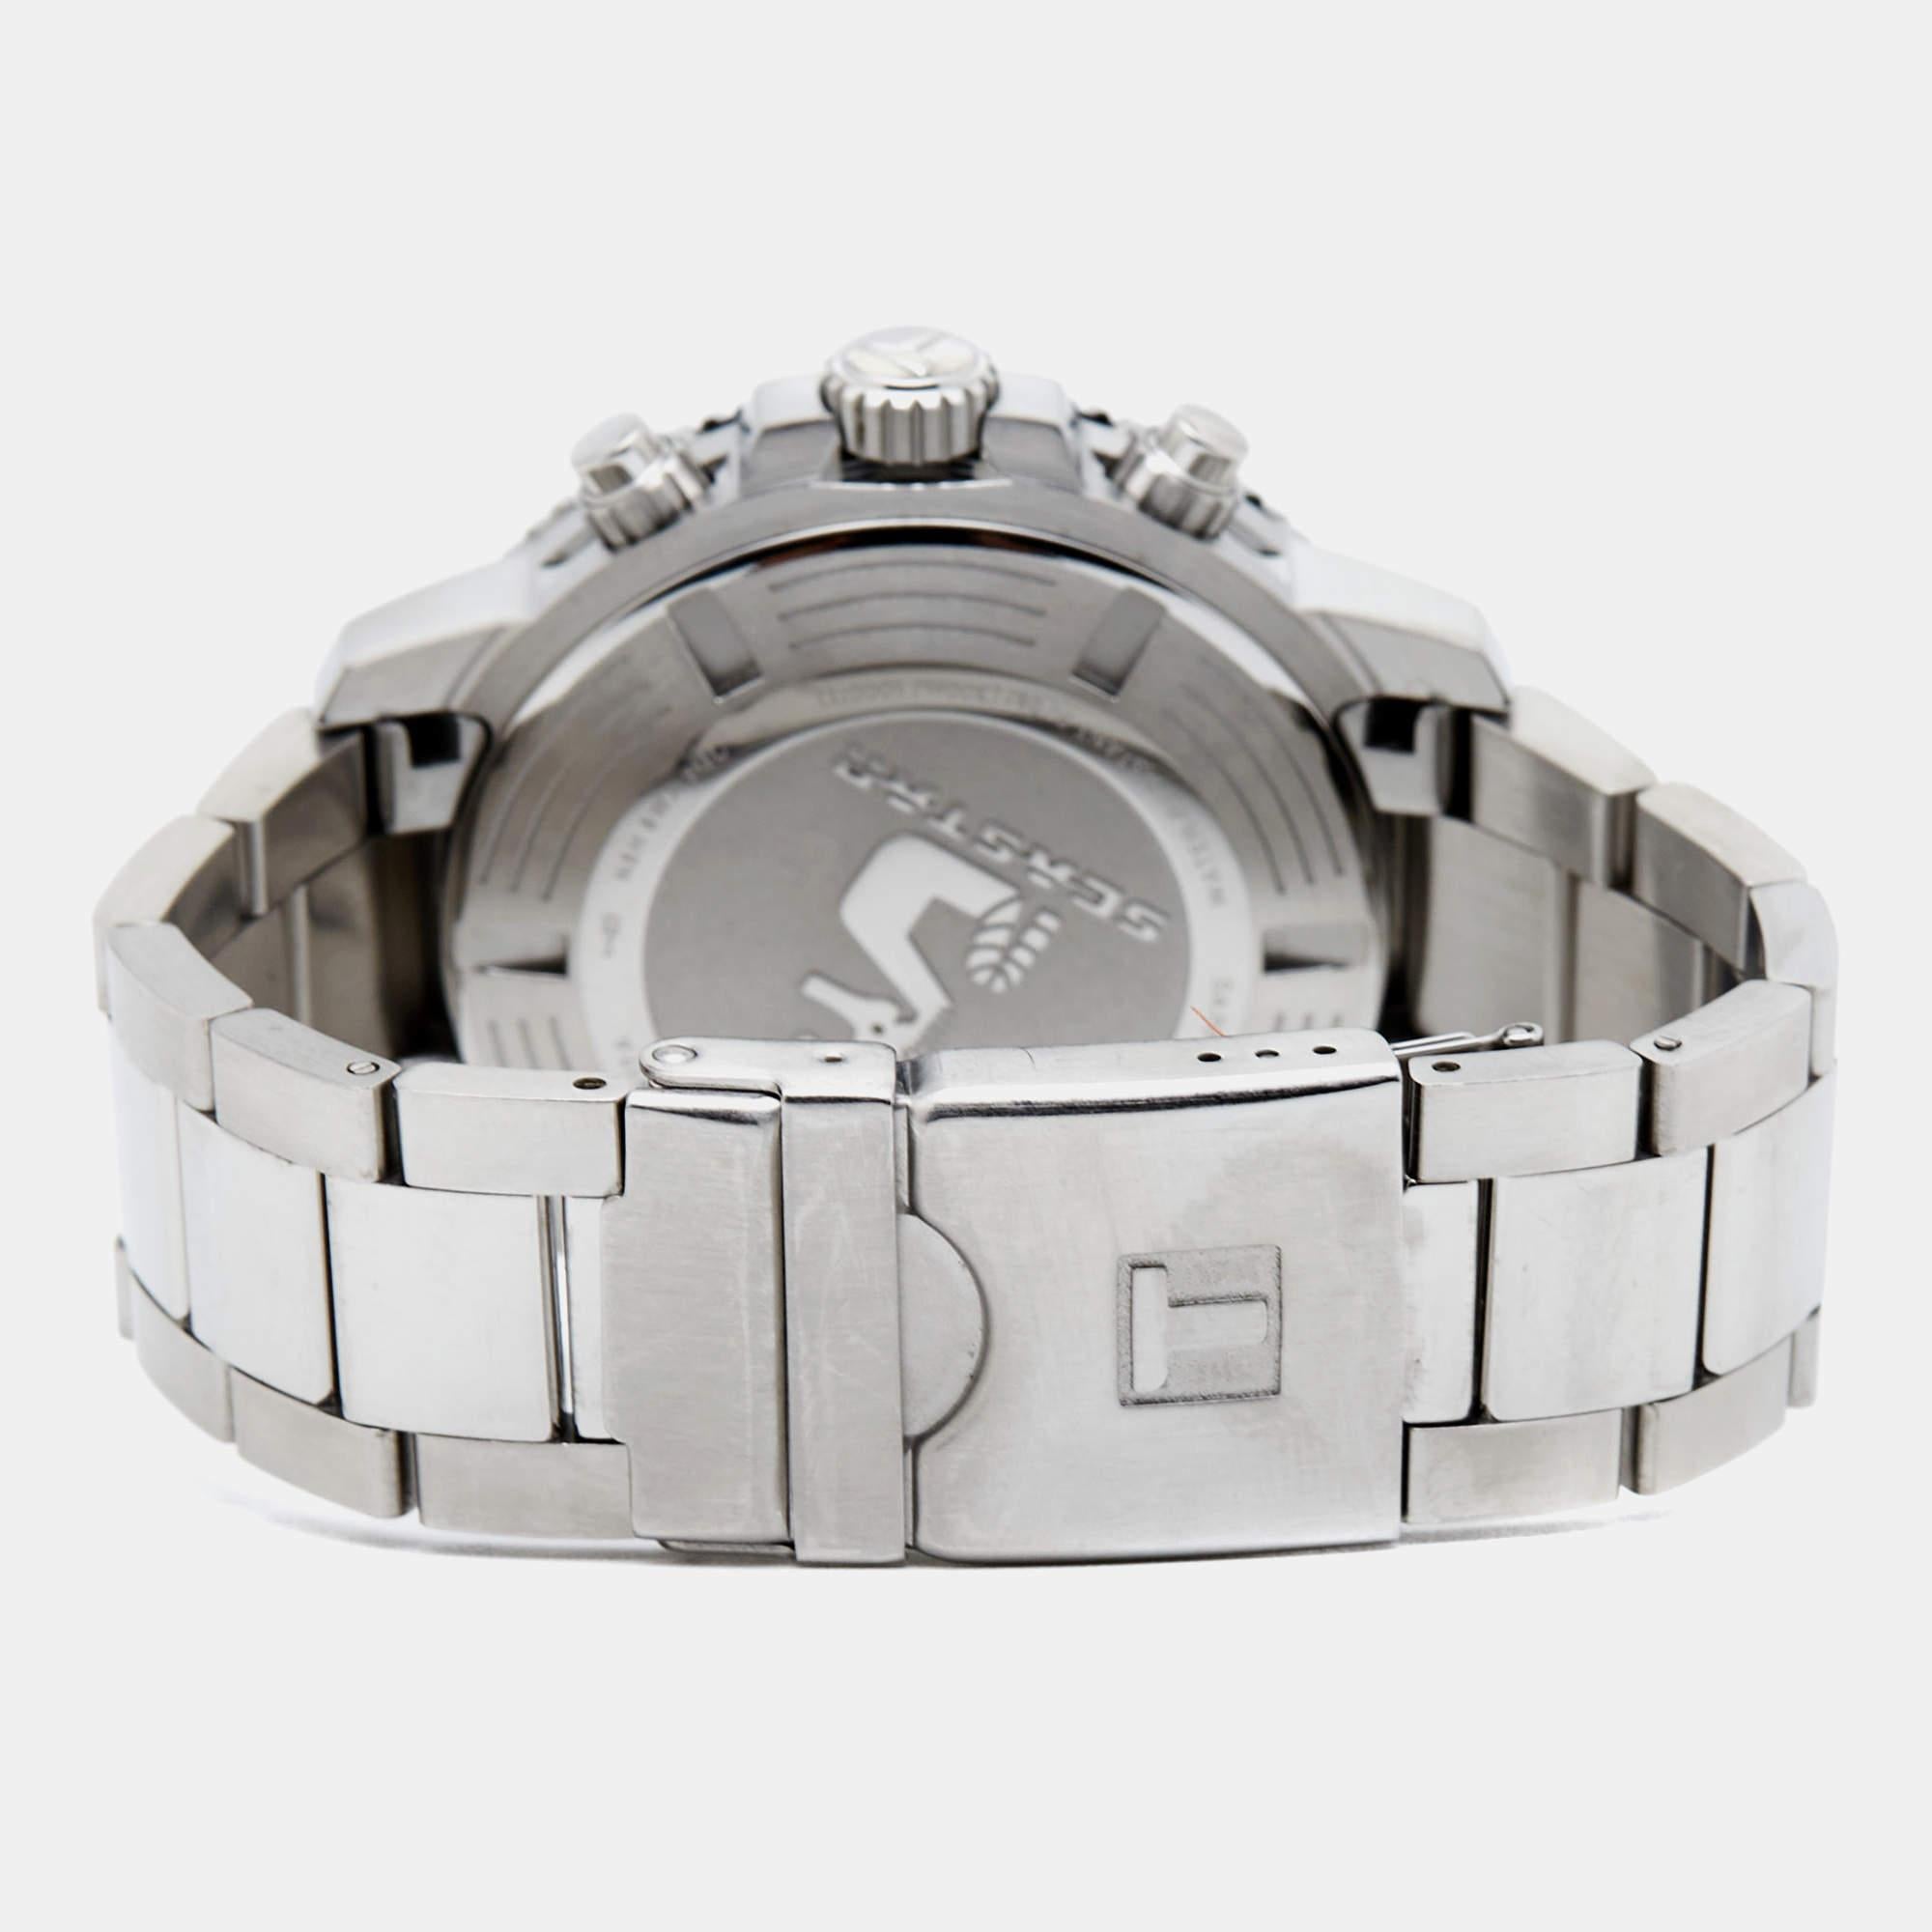 Découvrez la montre Tissot Seastar 1000 T120.417.11.041.00, un garde-temps étonnant qui respire l'élégance et la fonctionnalité. Avec son boîtier élégant en acier inoxydable de 45,50 mm et son cadran bleu saisissant, cette montre allie style et